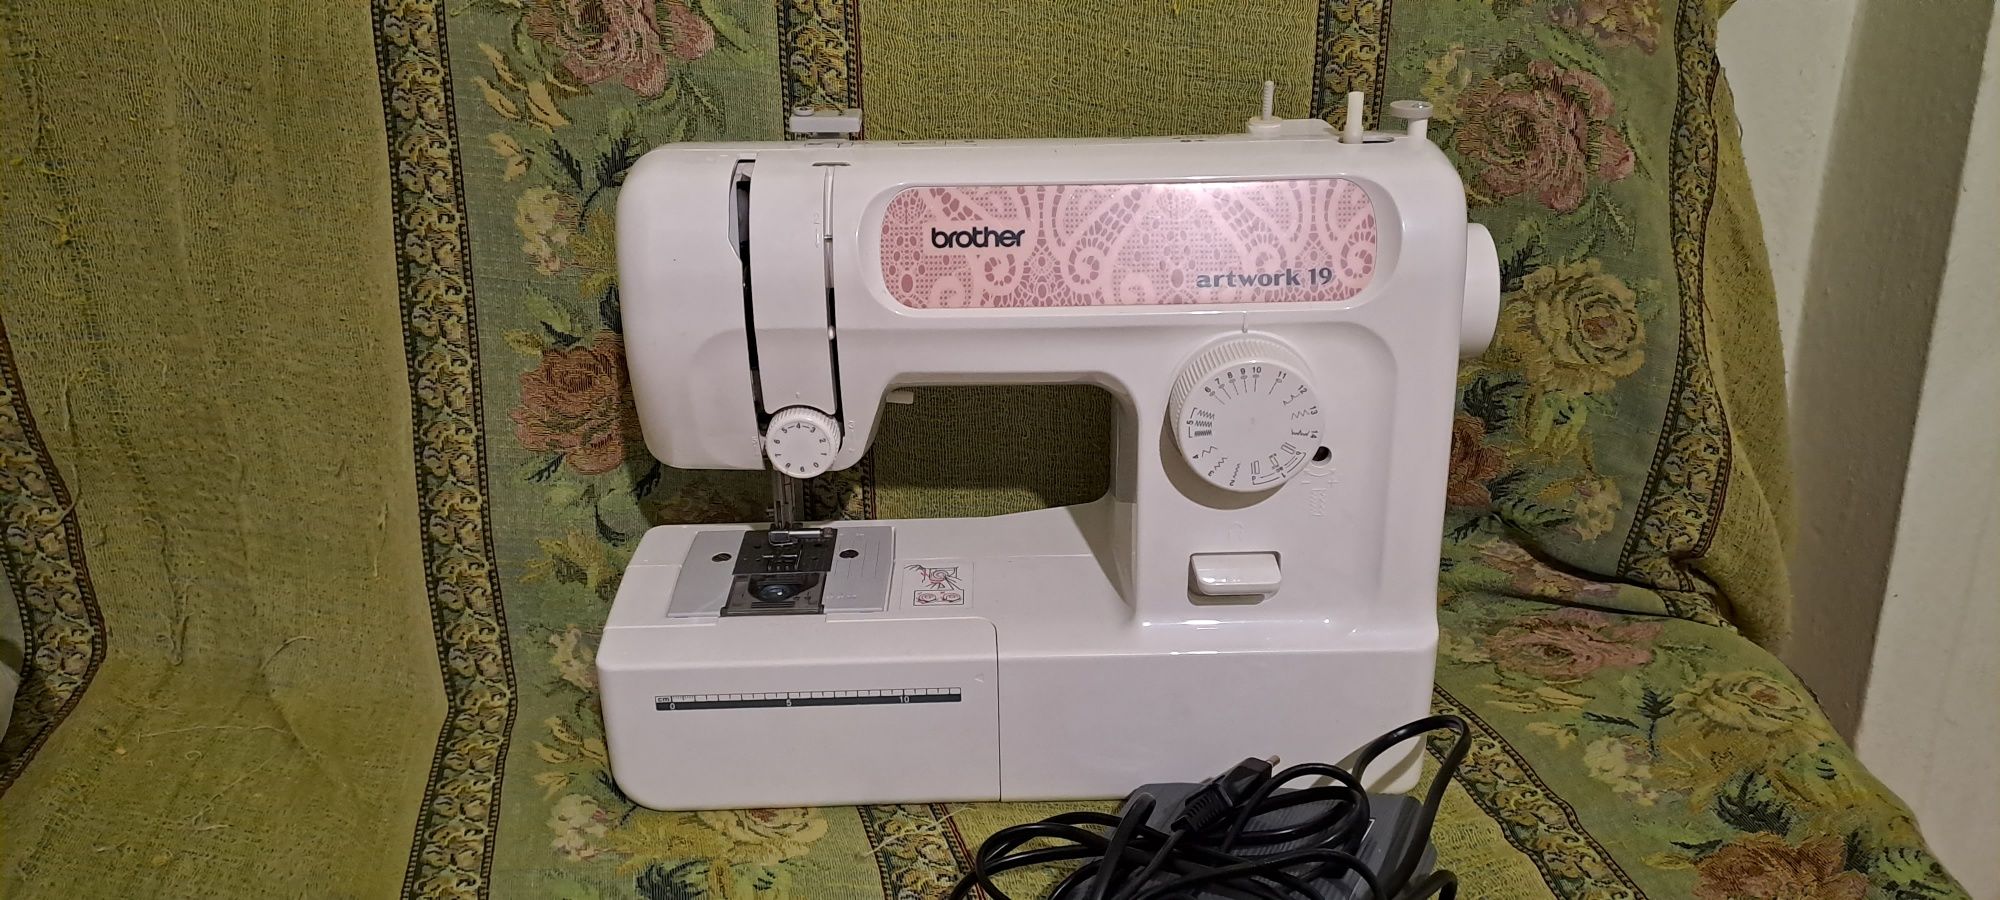 Швейная машинка почти новая продаю в связи с переездом